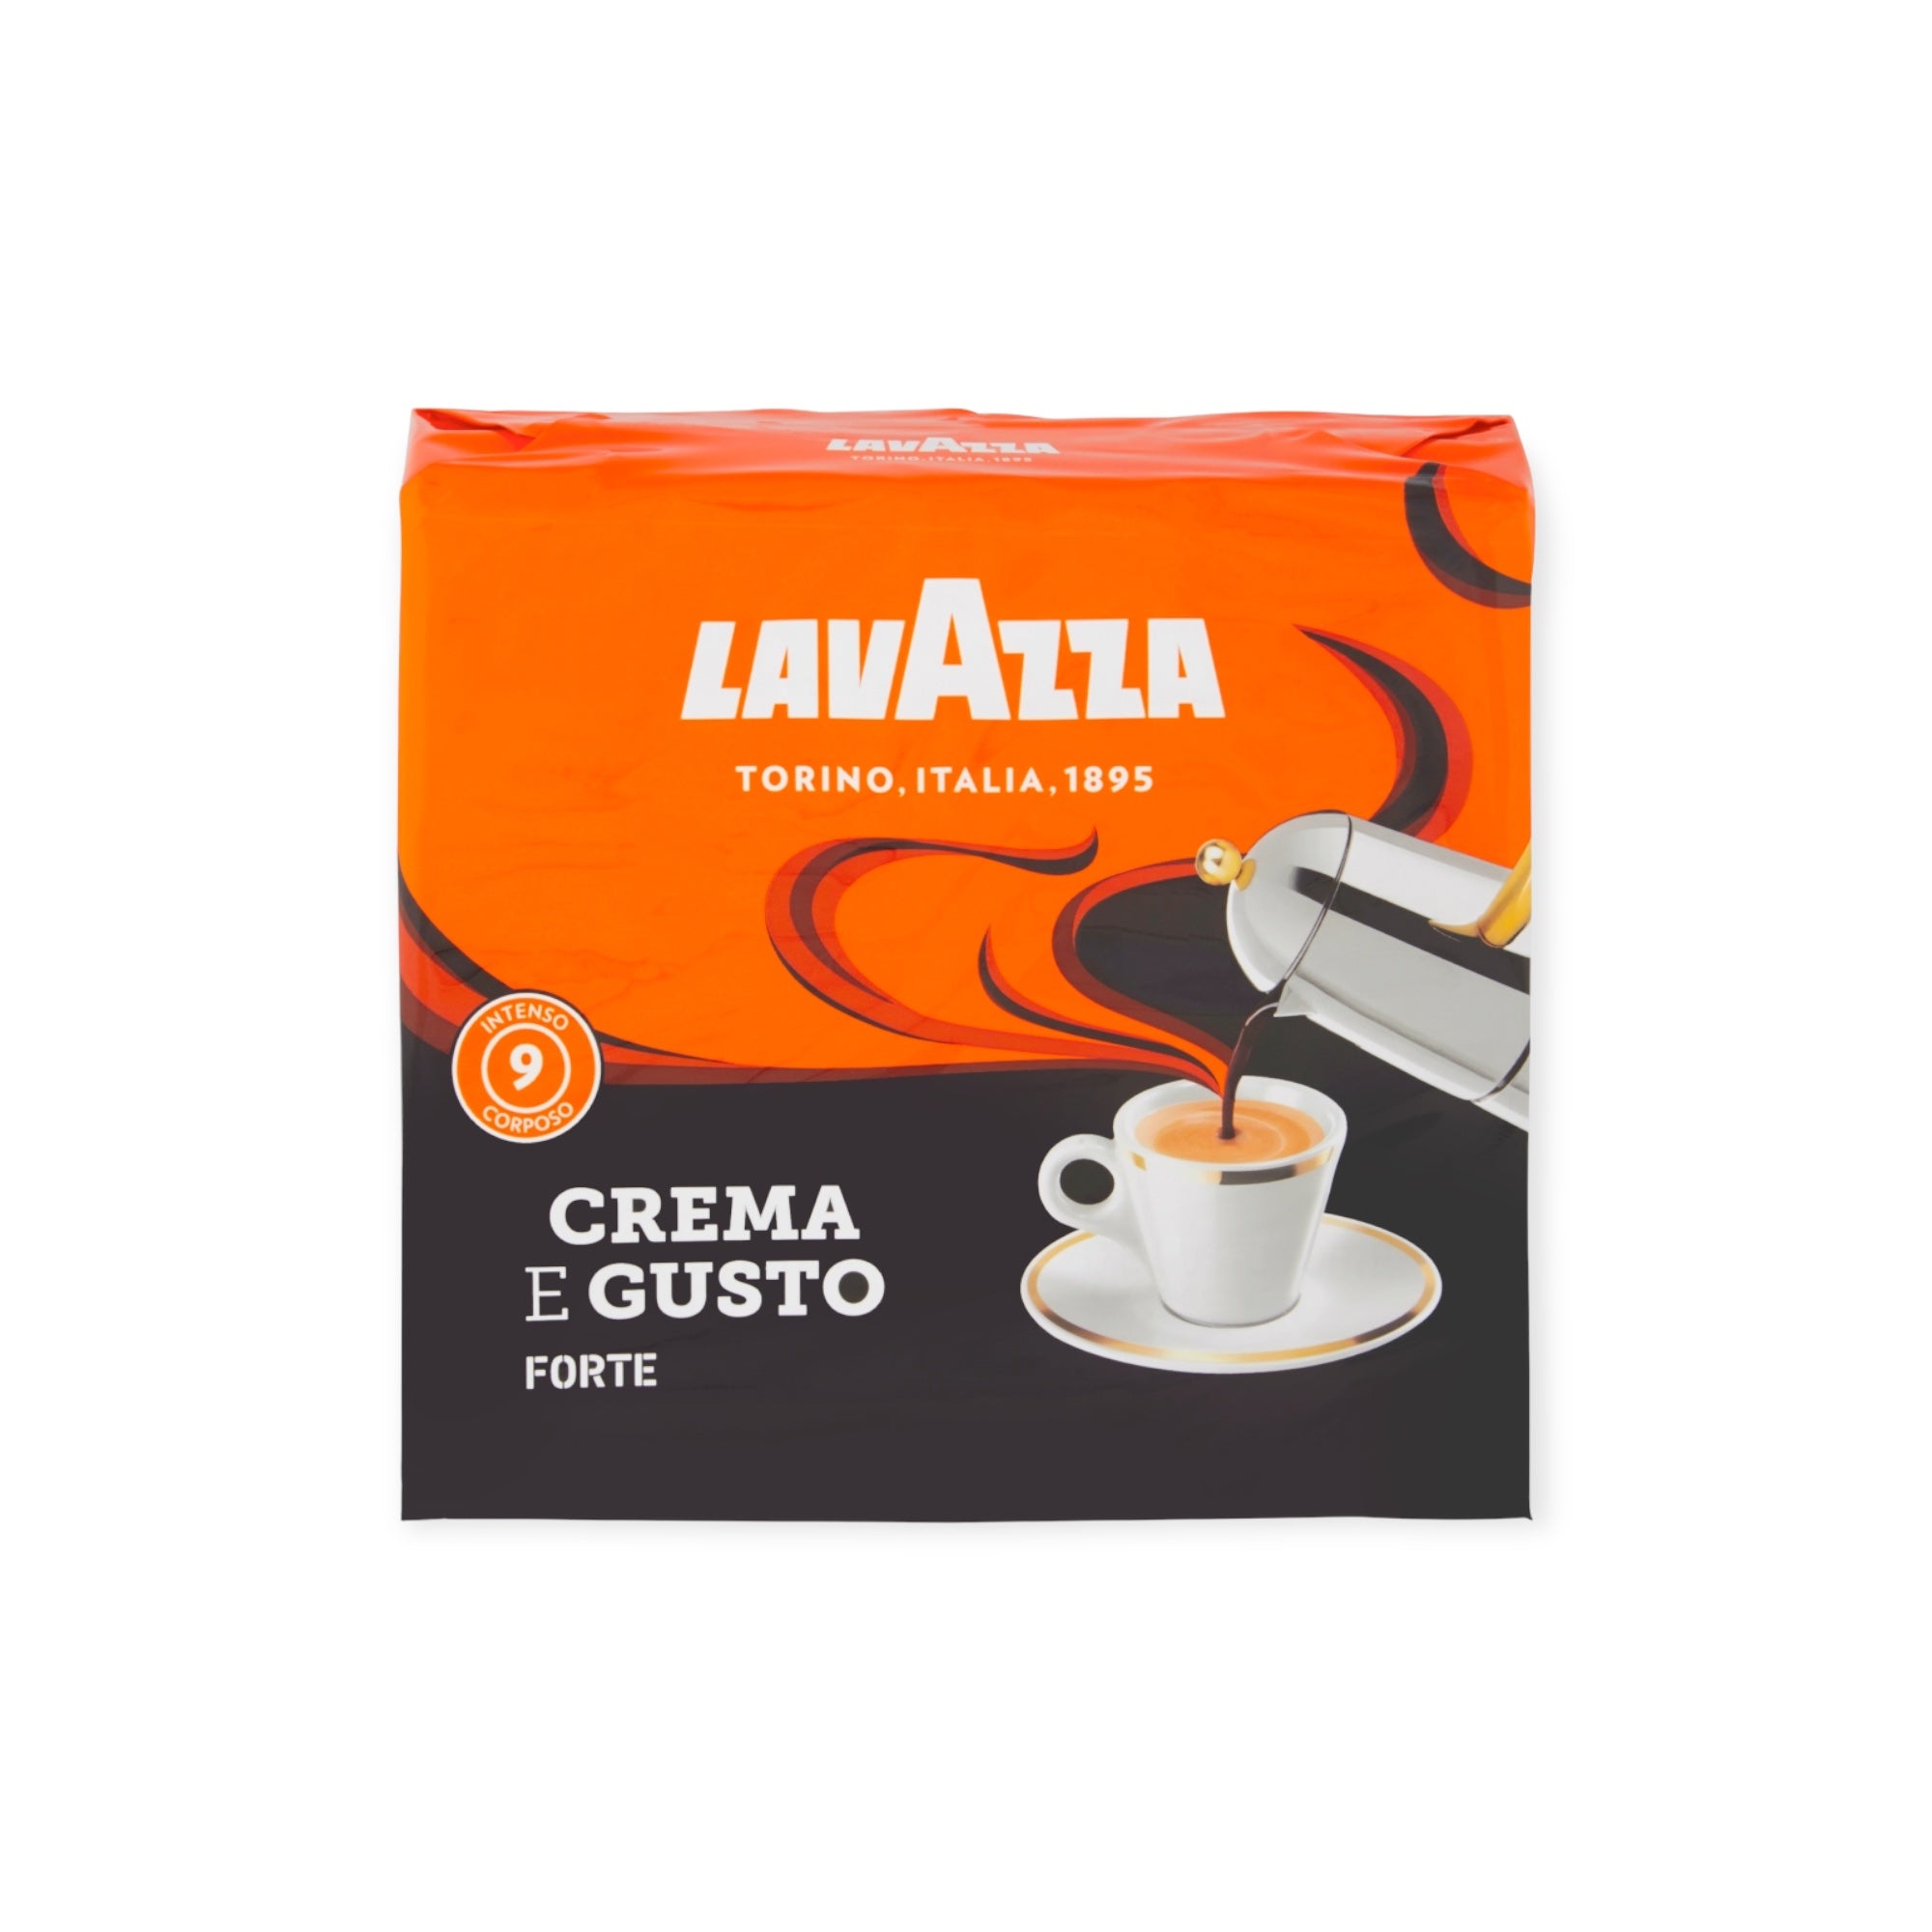 Lavazza Crema E Gusto Dolce Coffee Double Pack 2 x 250g